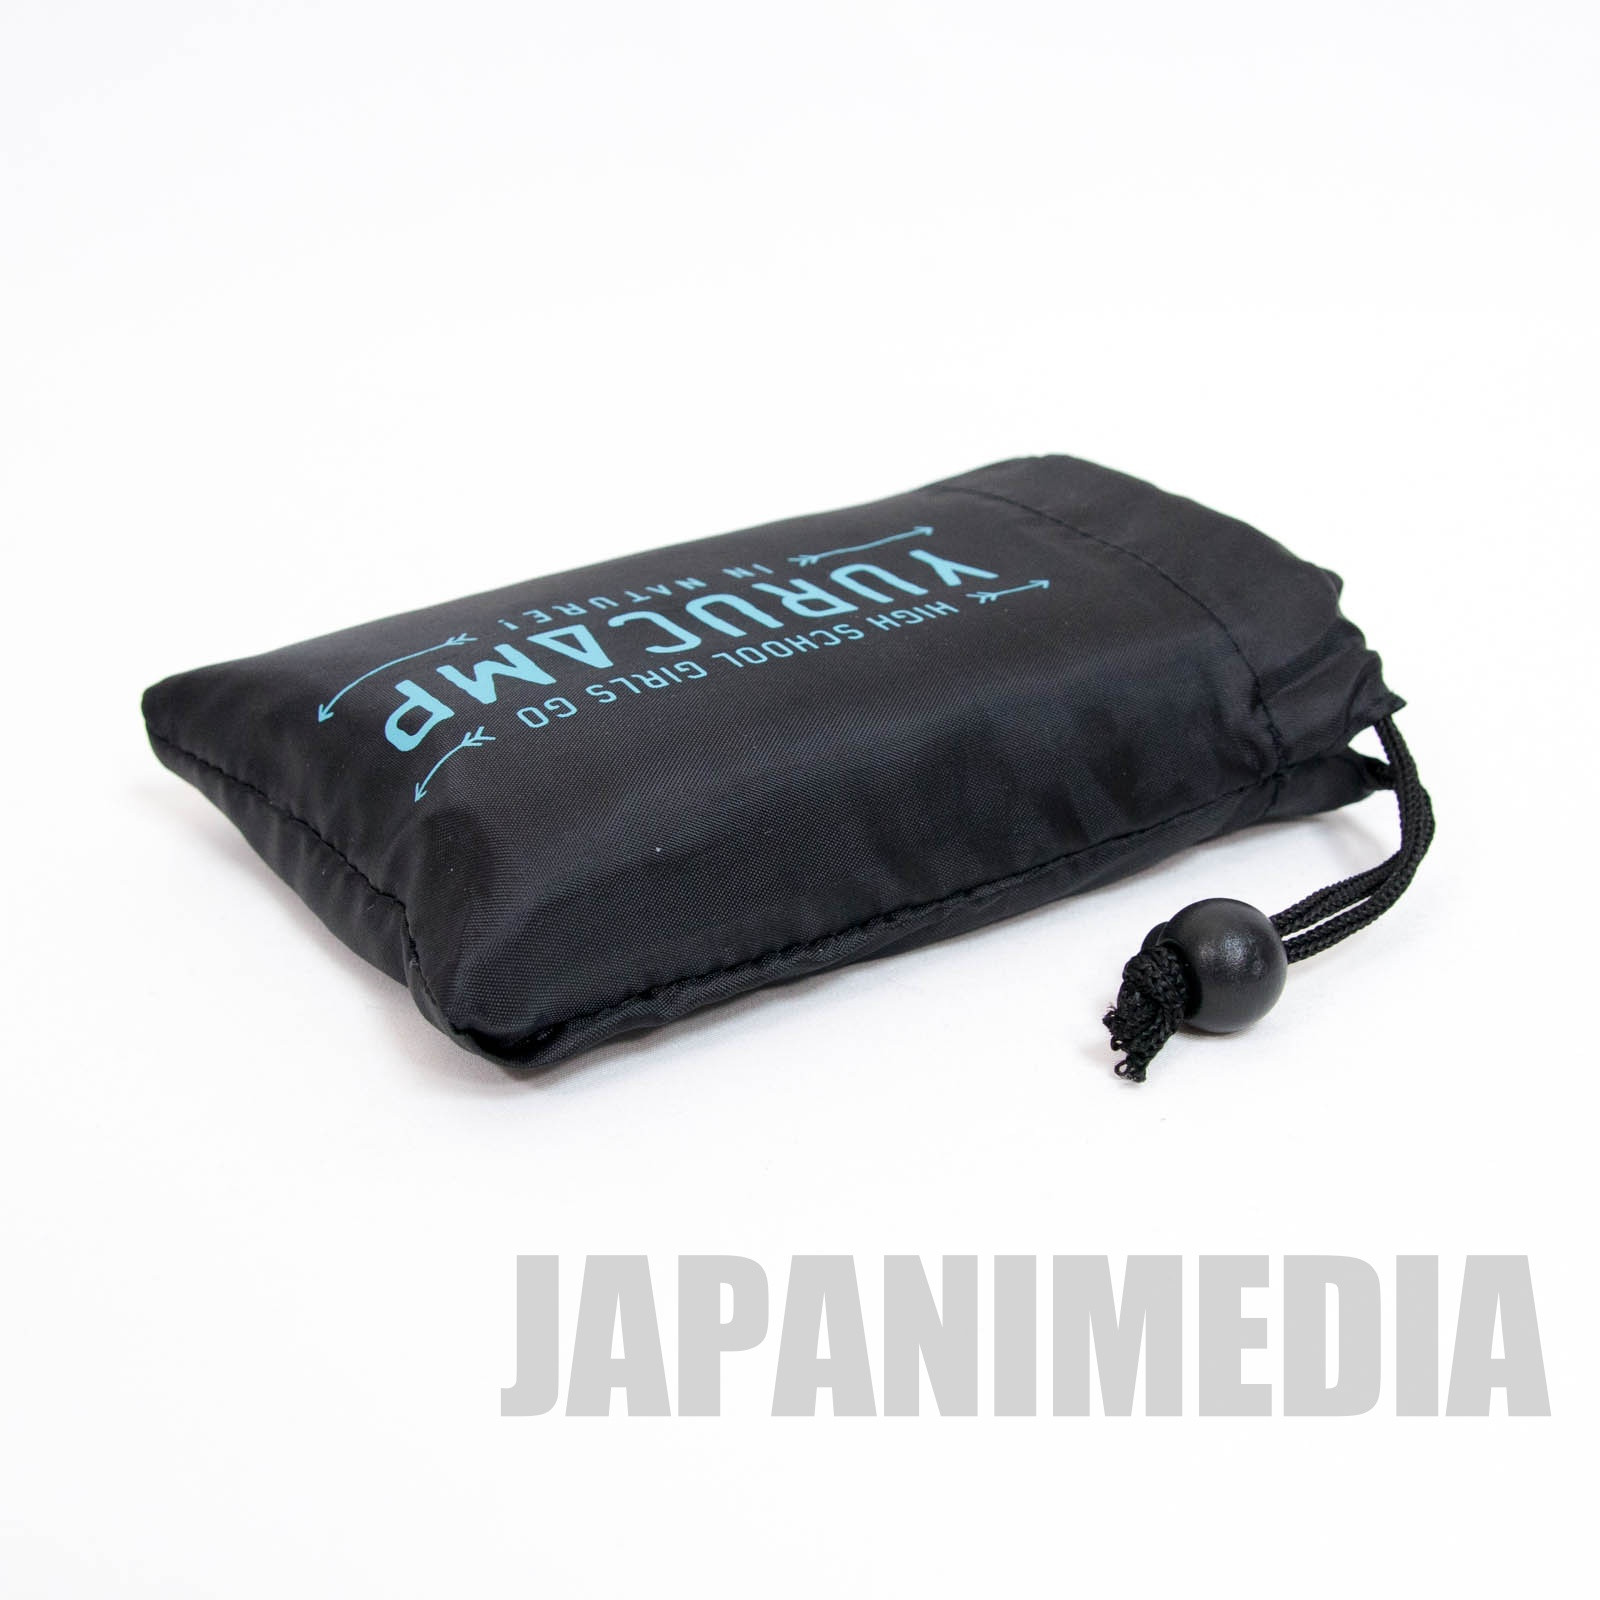 Laid-Back Camp Eco-bag (Reusable bag) JAPAN ANIME